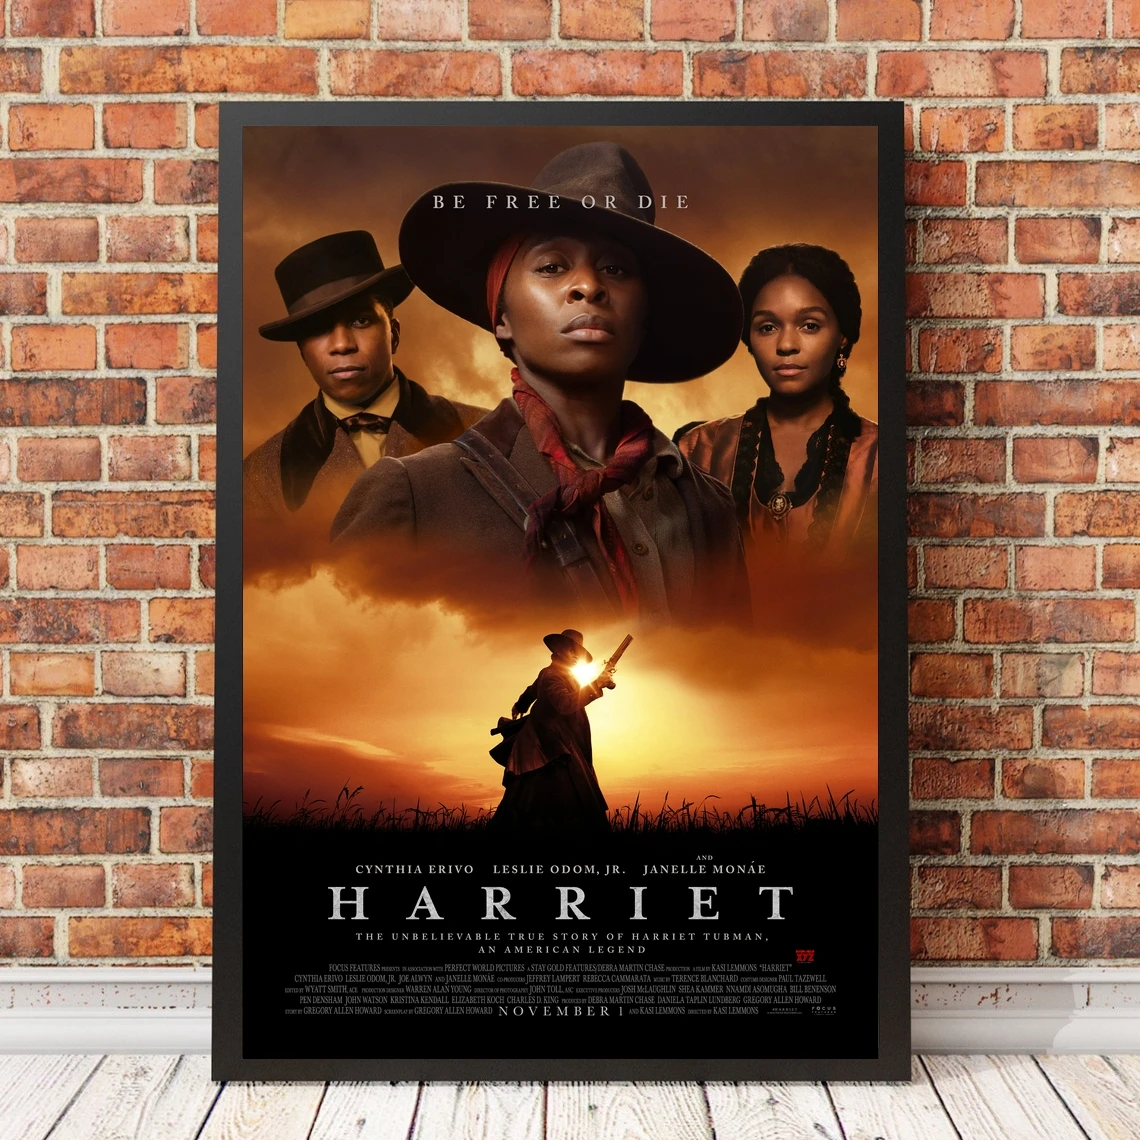 

Harriet обложка фильма постер, холст, художественные принты, украшение для дома, настенная живопись (без рамки)